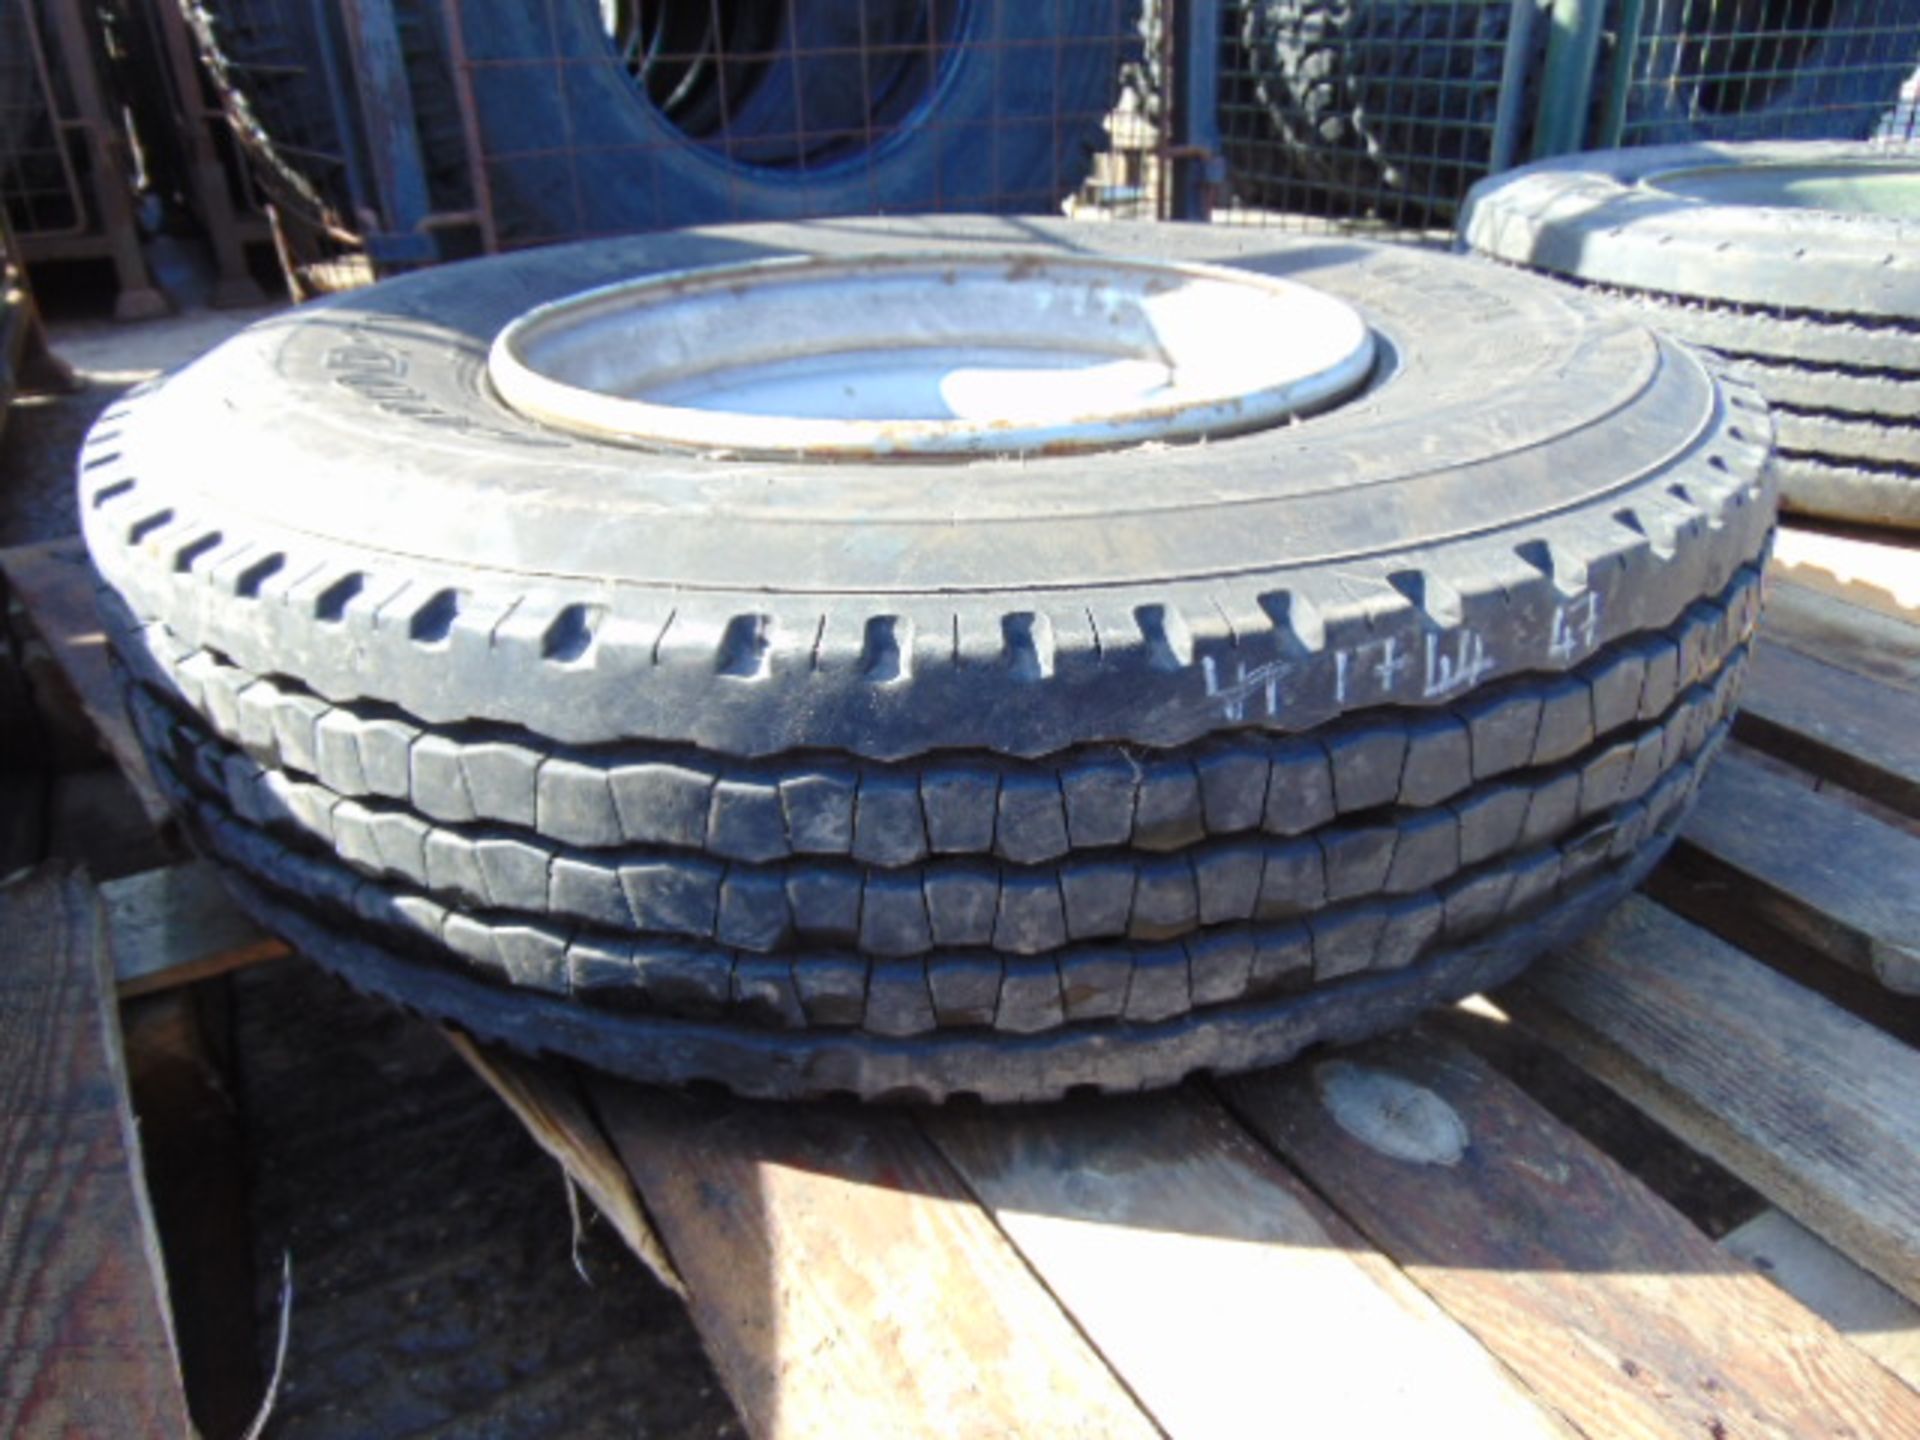 1 x Goodyear G291 10R 17.5 Tyre complete with 6 stud rim - Bild 2 aus 7